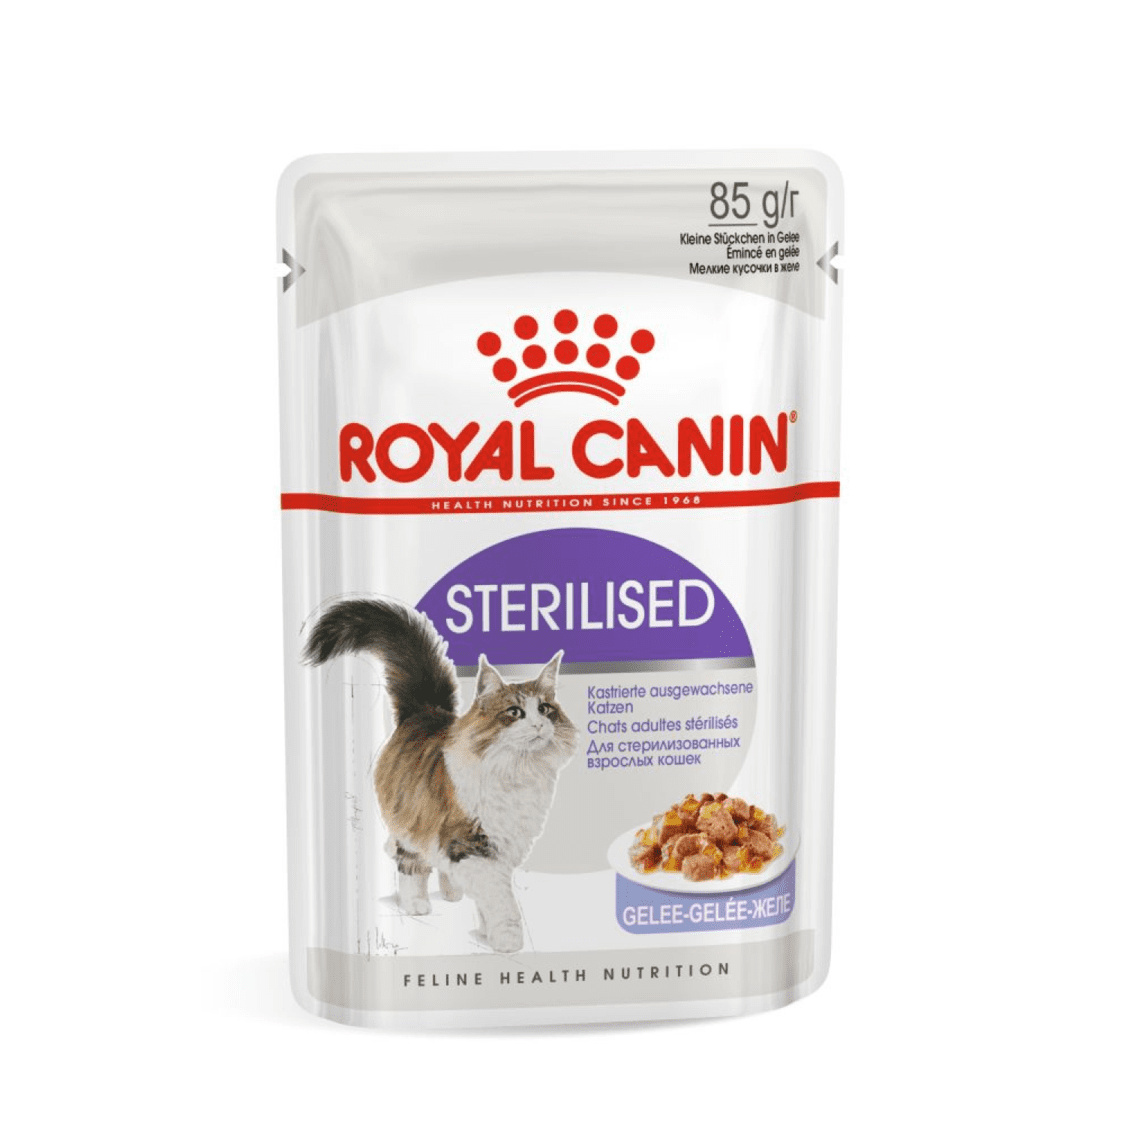 Royal Canin паучи Royal Canin паучи кусочки в желе для кастрированных кошек 1-7лет (1 шт.) royal canin паучи royal canin паучи кусочки в соусе для кошек 1 10 лет отличное пищеварение 1 шт